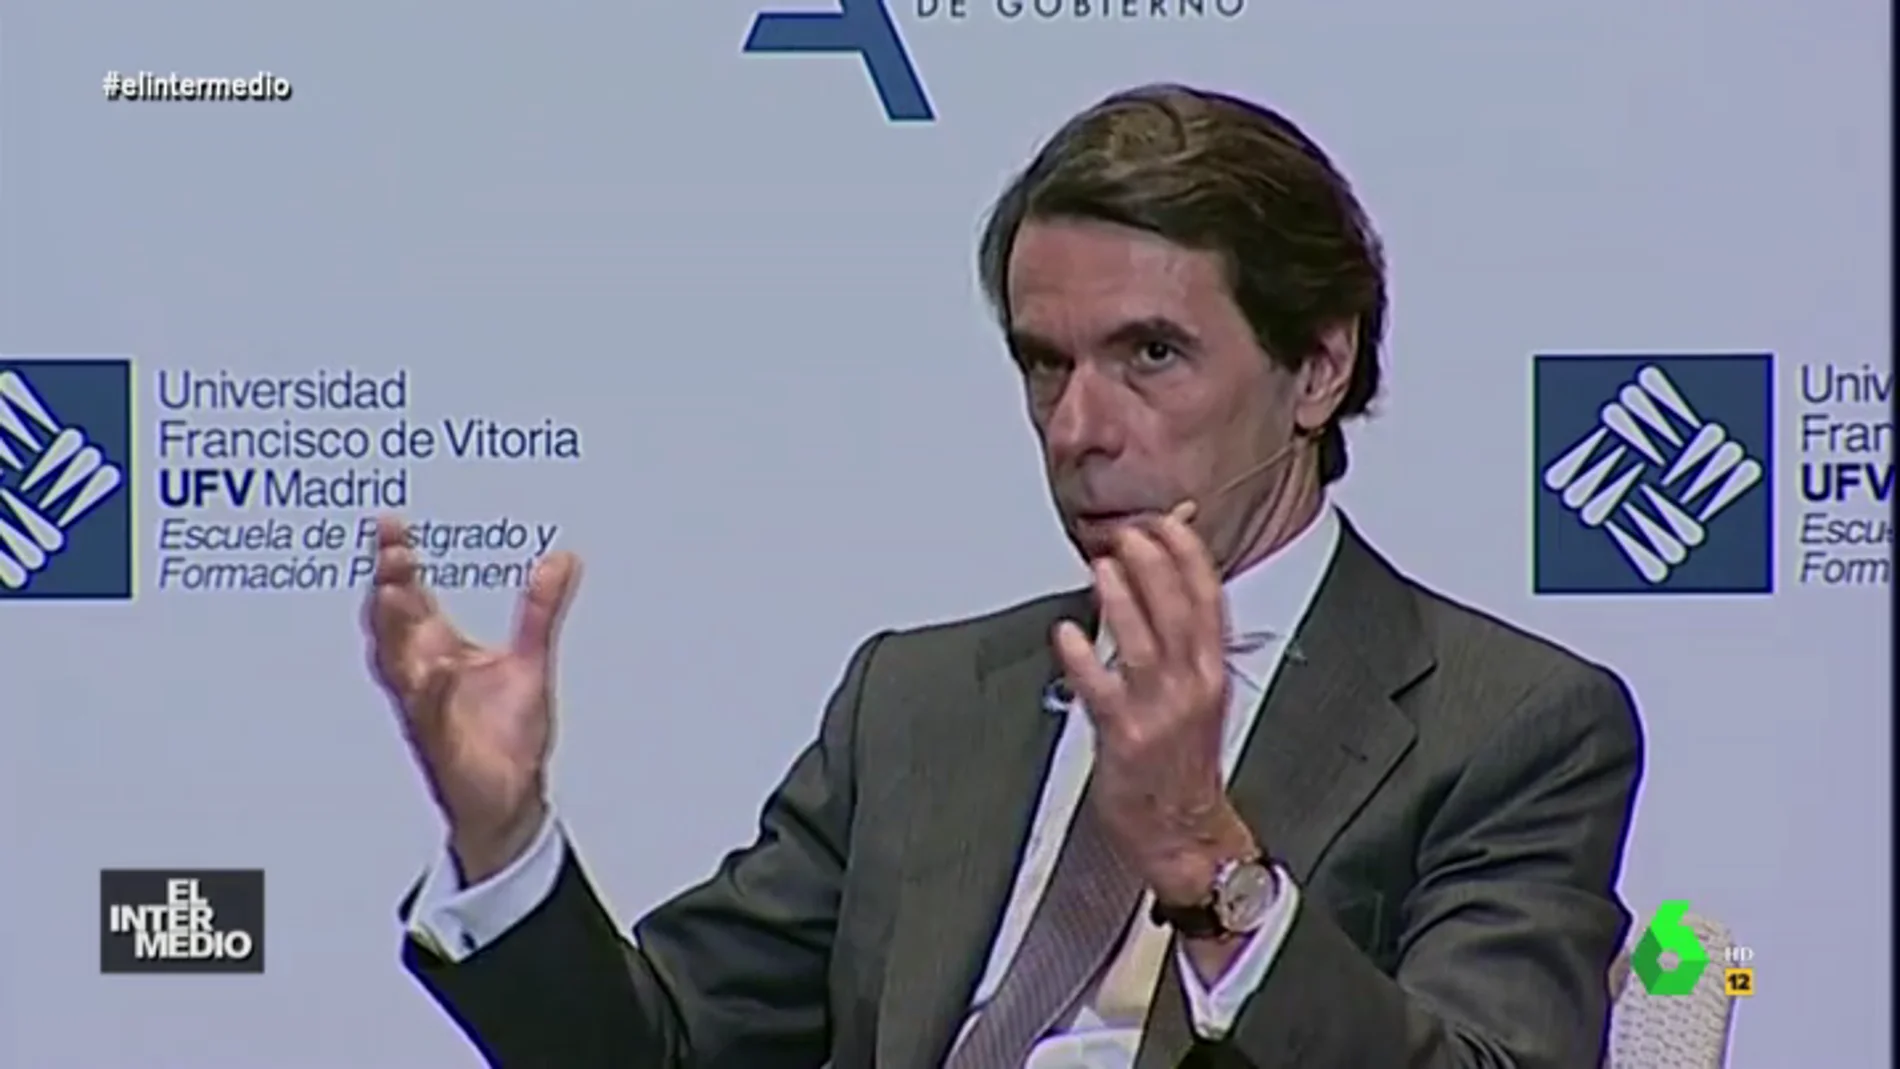 Vídeo manipulado: José María Aznar